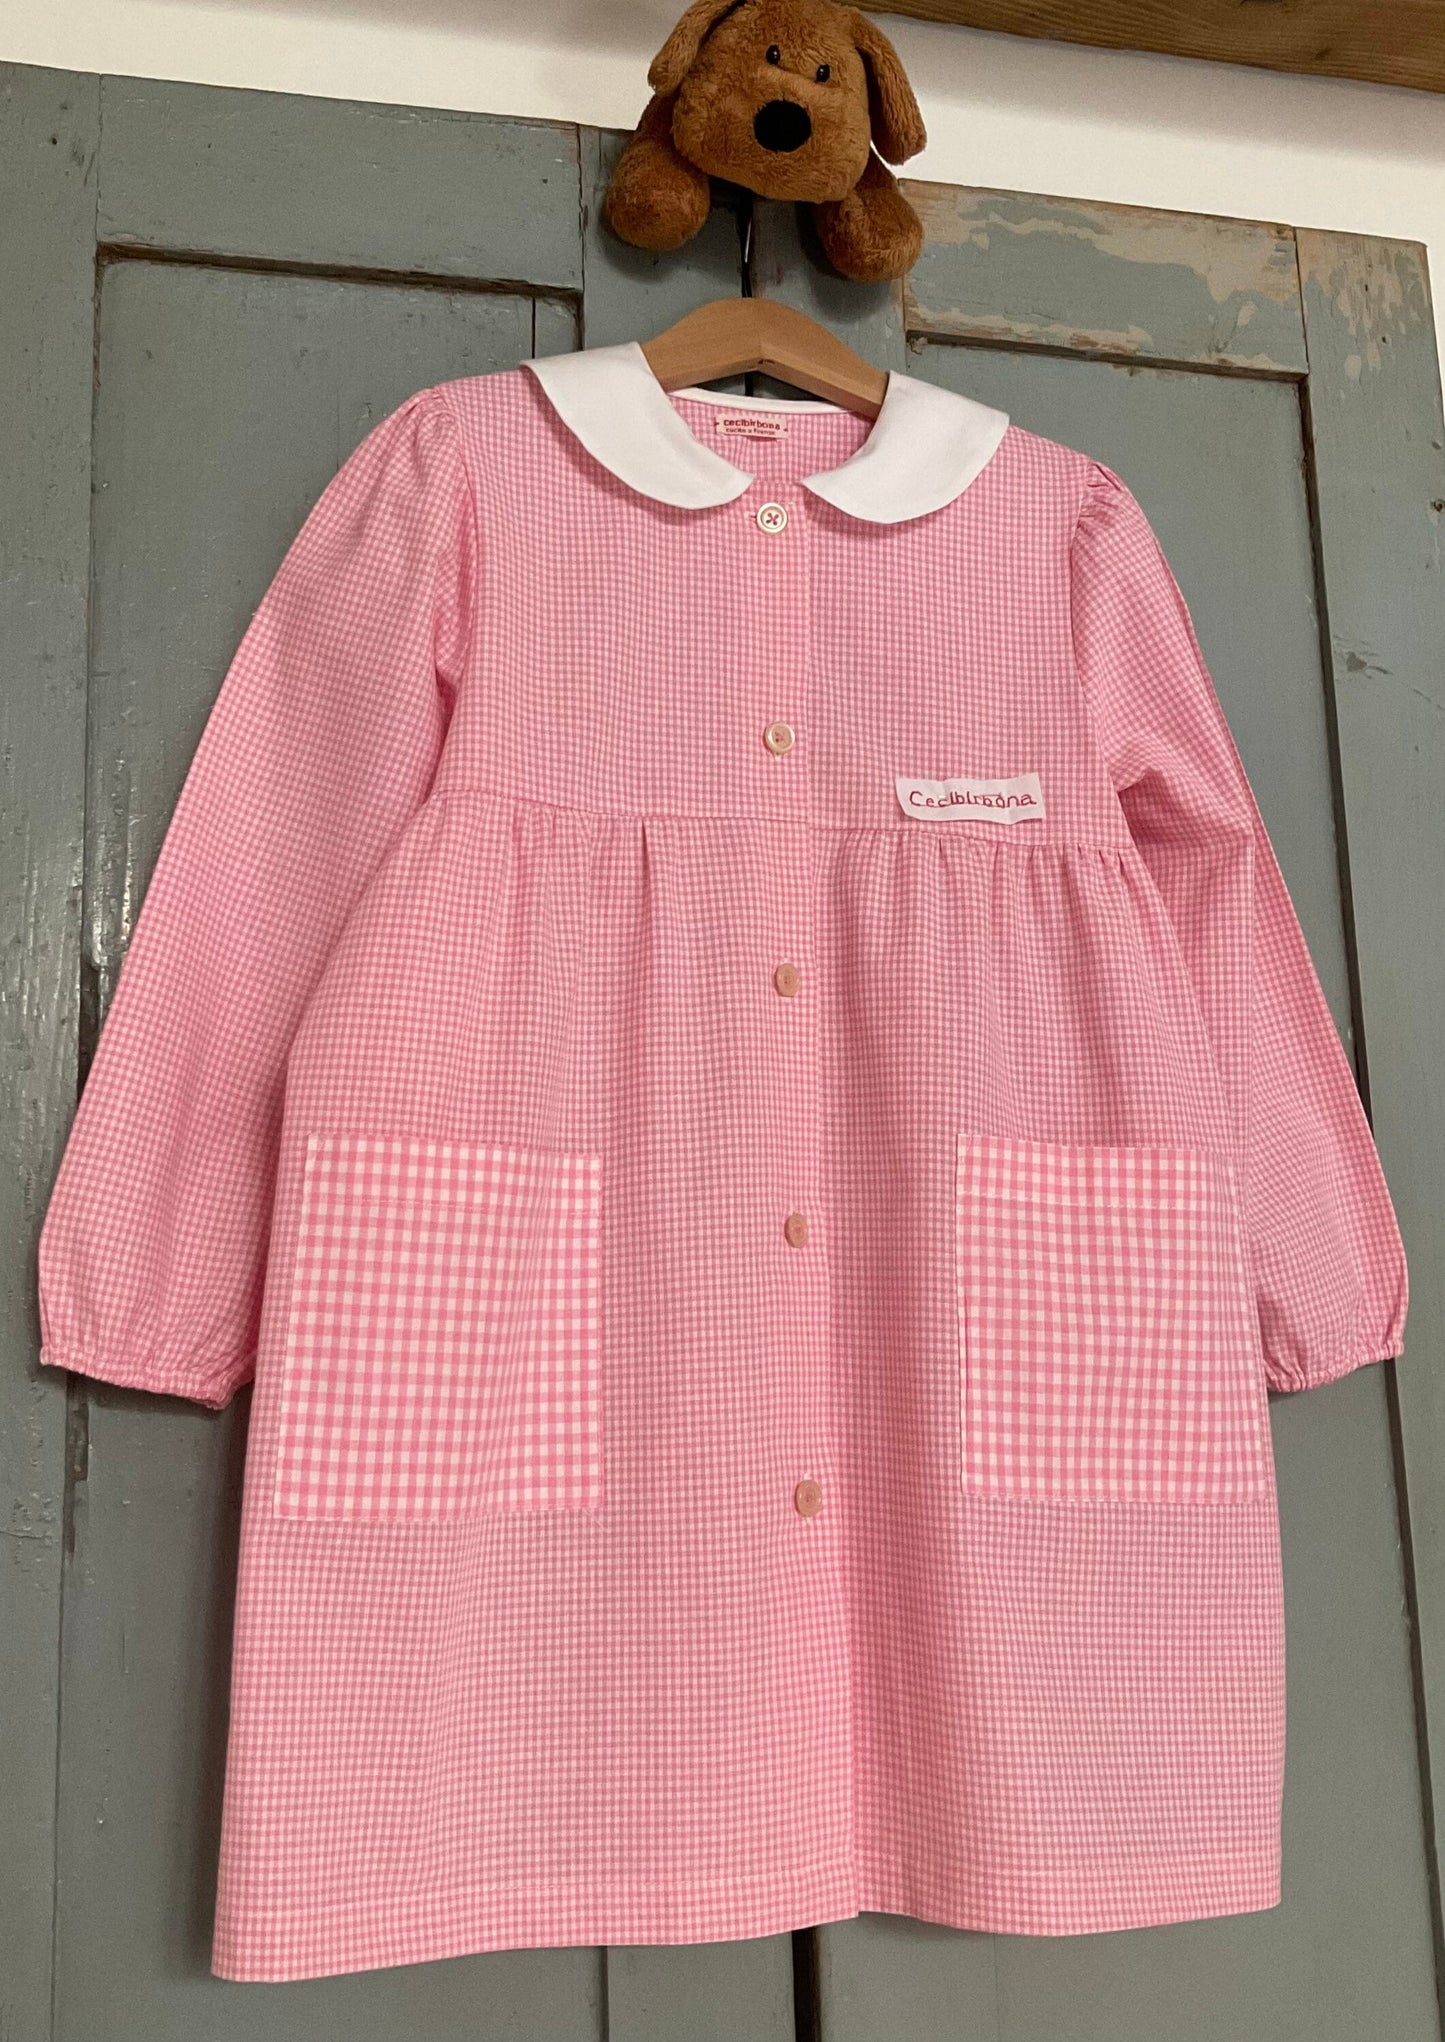 Grembiule rosa taglia 1/2 per bambina  - scuola materna - asilo nido - cotone a quadretti rosa bianchi - grembiulino quadrettini bambina